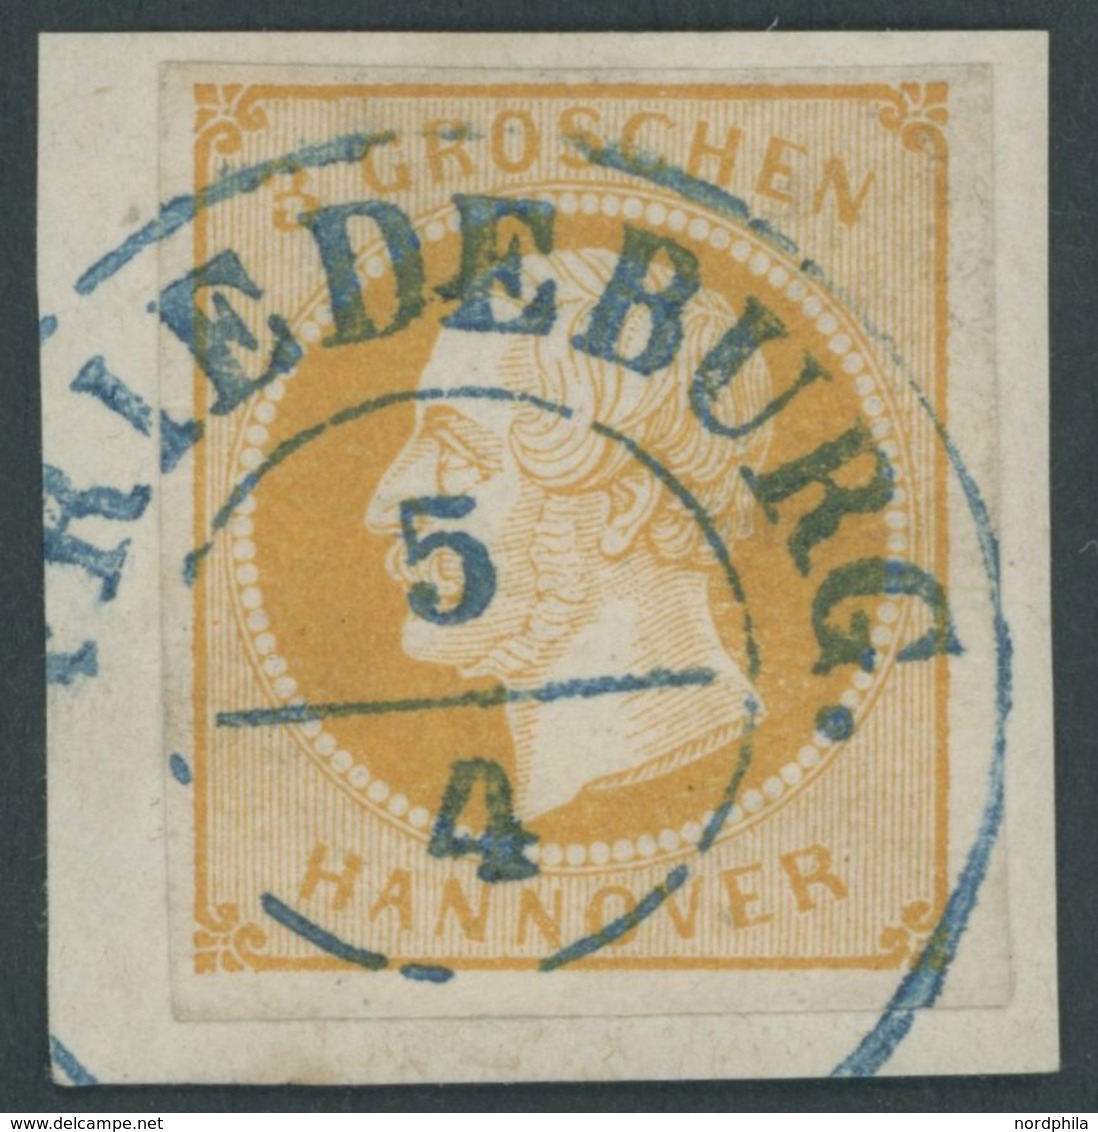 HANNOVER 16a BrfStk, 1859, 3 Gr. Gelborange, Zentrischer Blauer Stempel FRIEDEBURG, Prachtbriefstück - Hanover